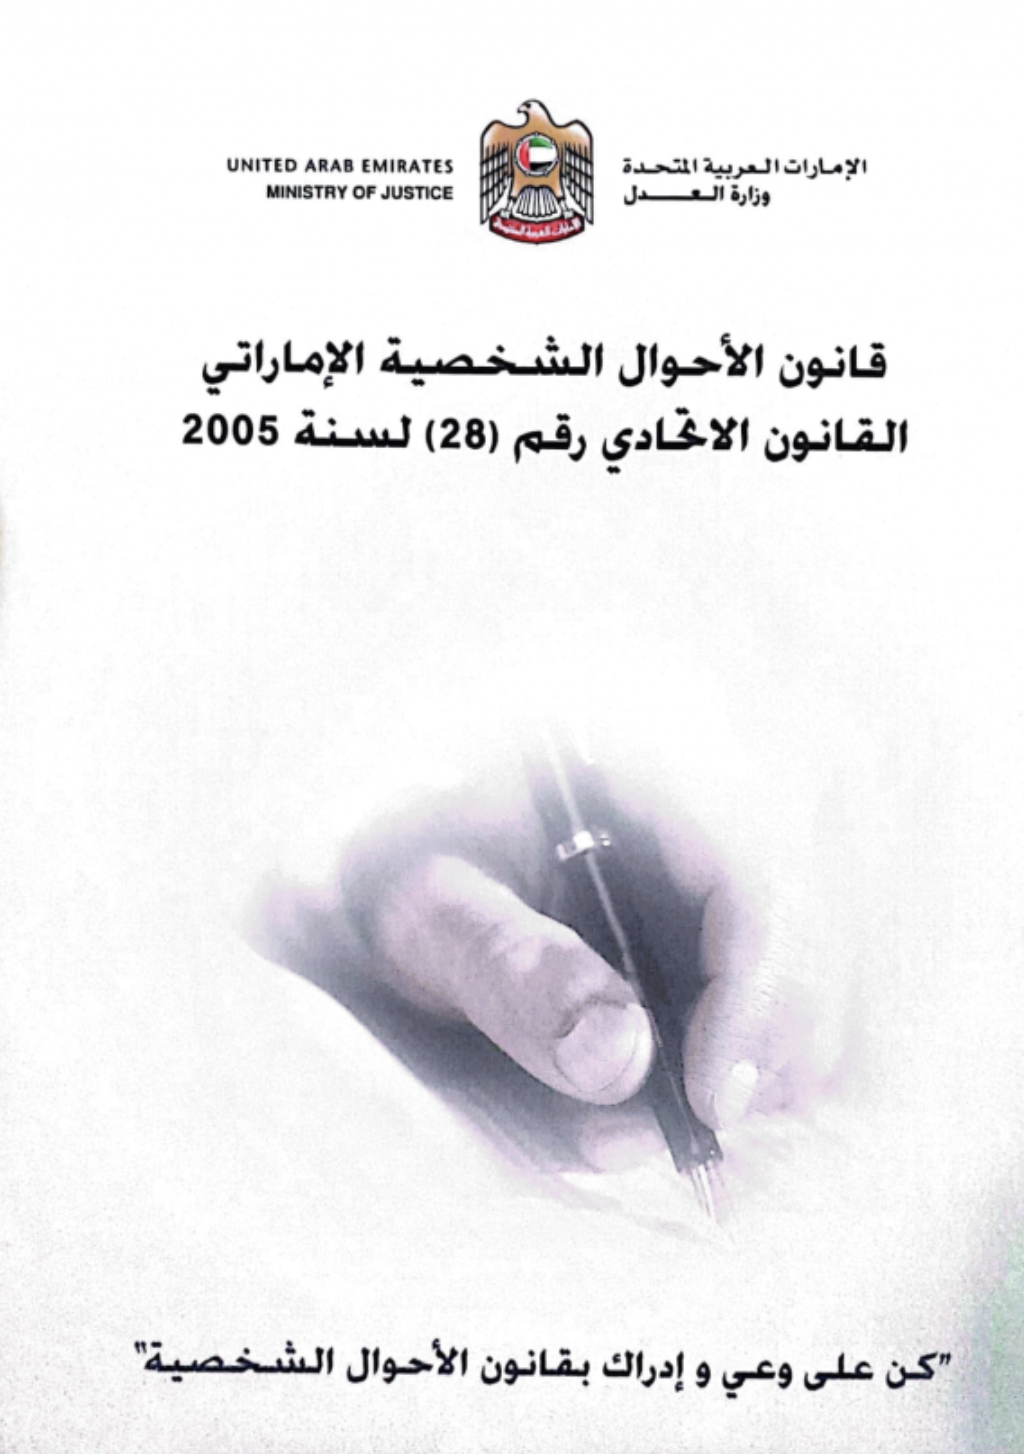 كتاب قانون الأحوال الشخصية الإماراتي القانون الاتحادي رقم (28) لسنة 2005 : كن على وعي وإداراك بقانون الأحوال الشخصية